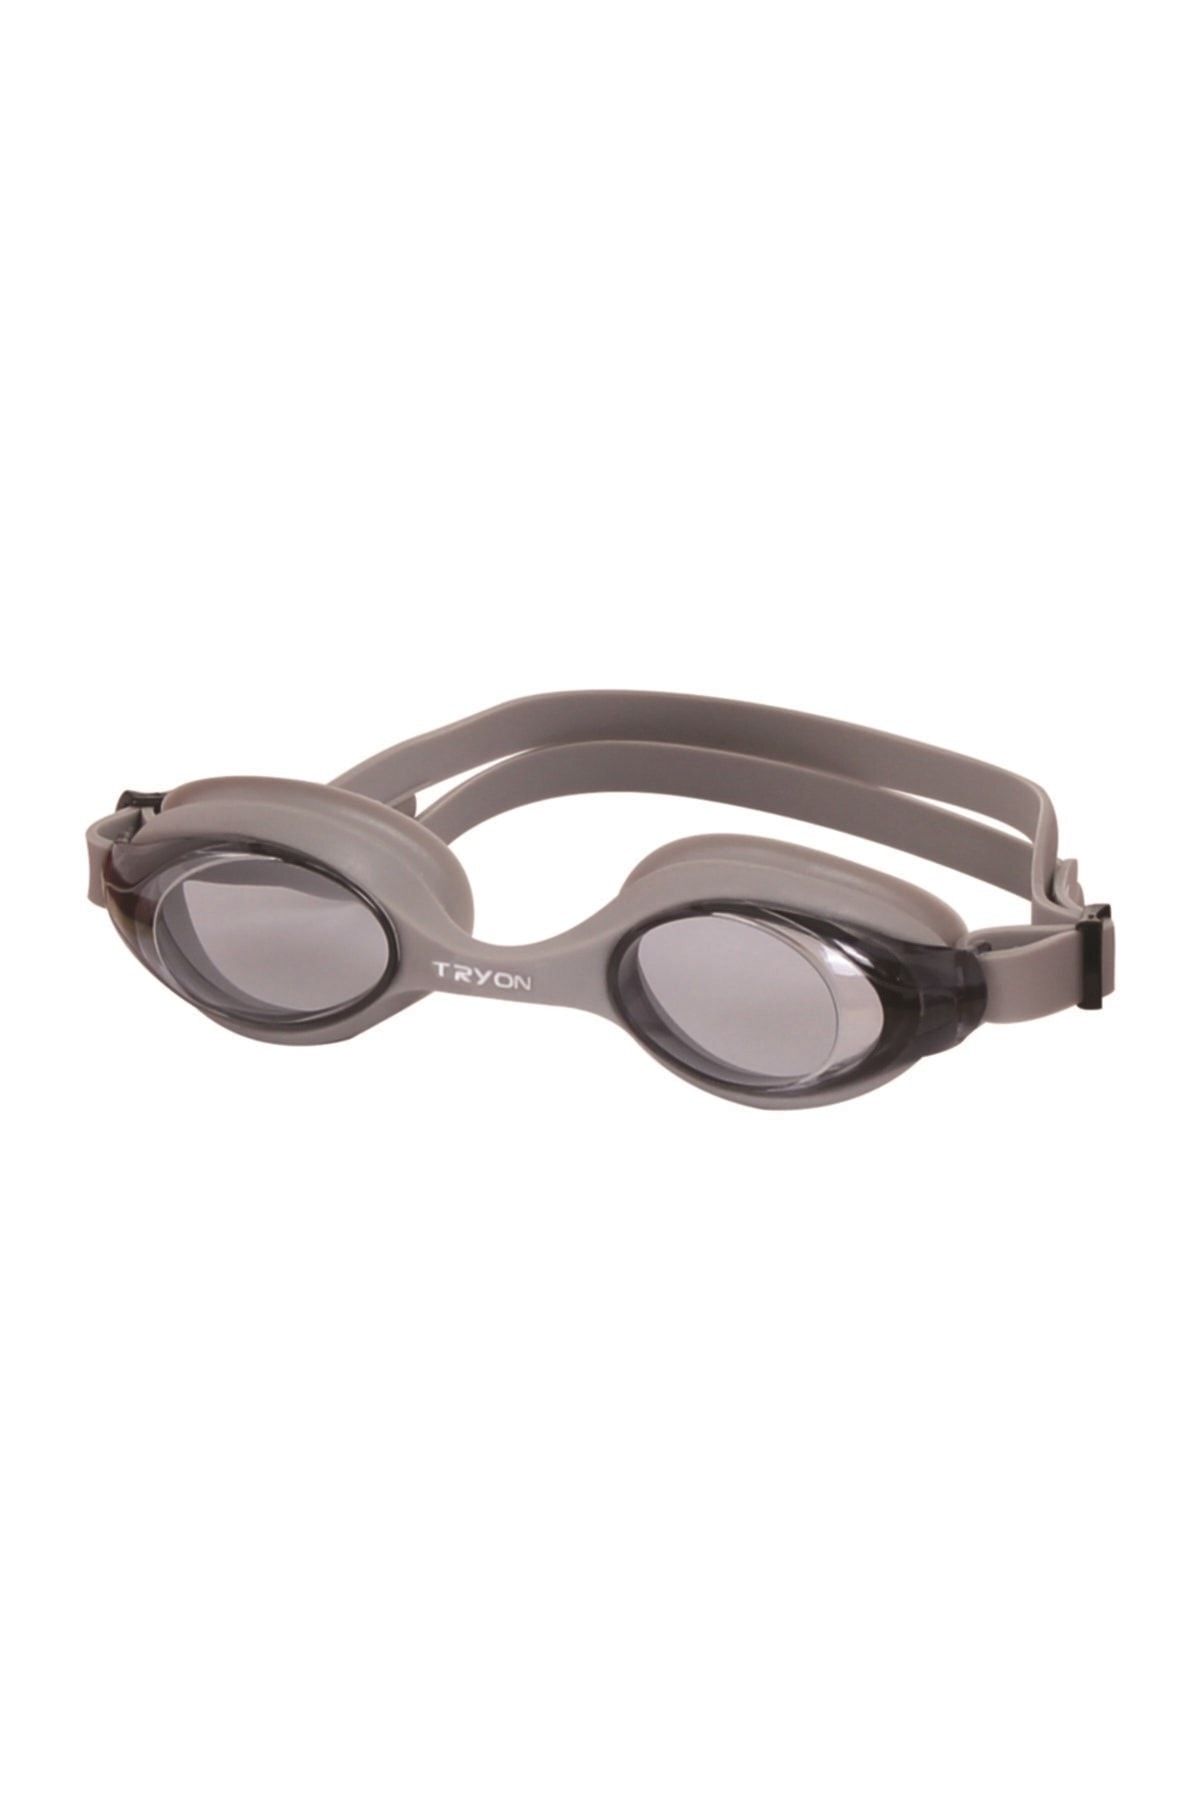 TRYON Yüzücü Gözlüğü Gümüş Yg-400